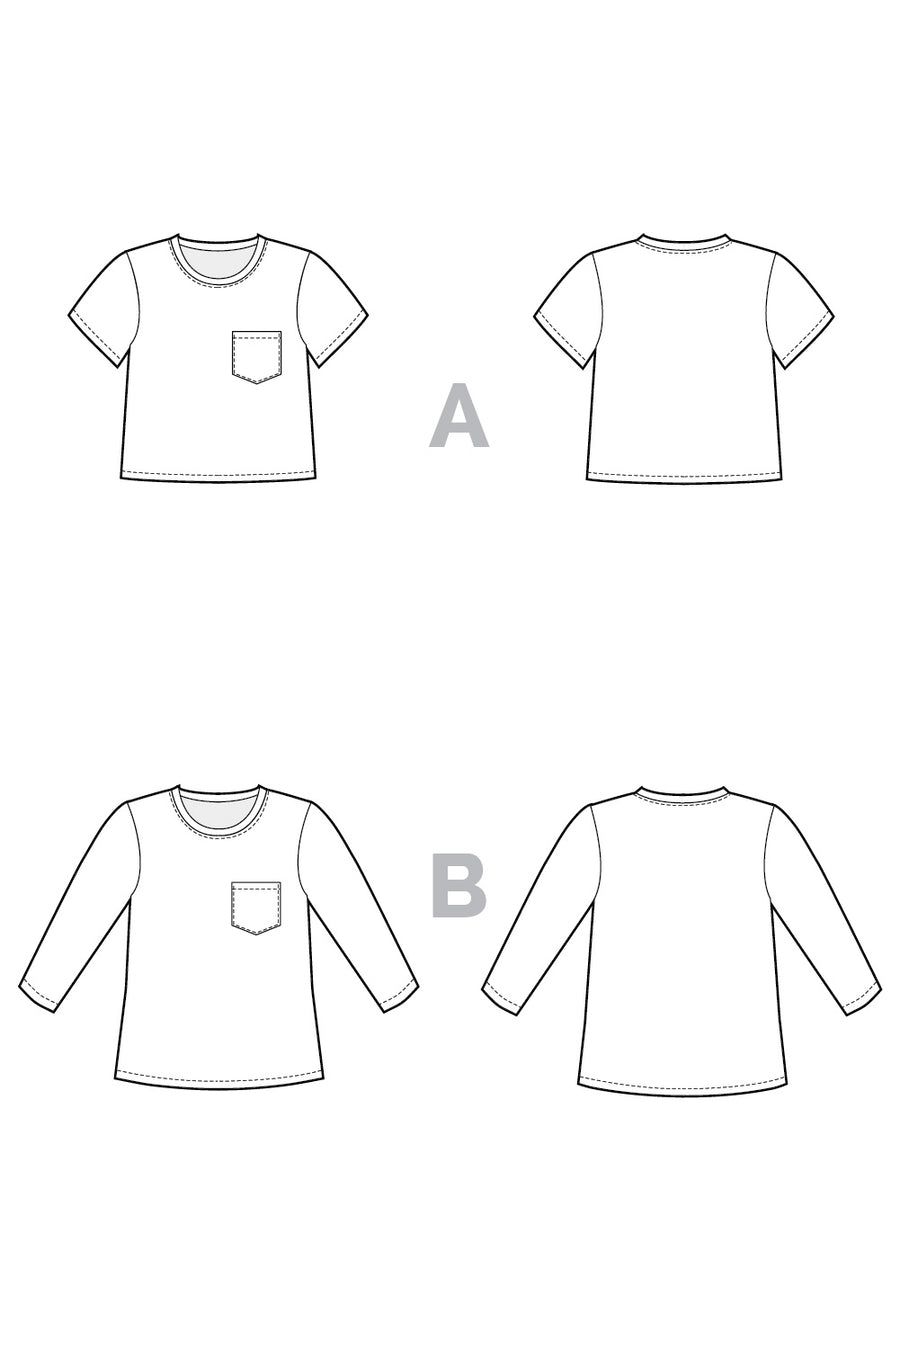 Core T-Shirt Free Pattern